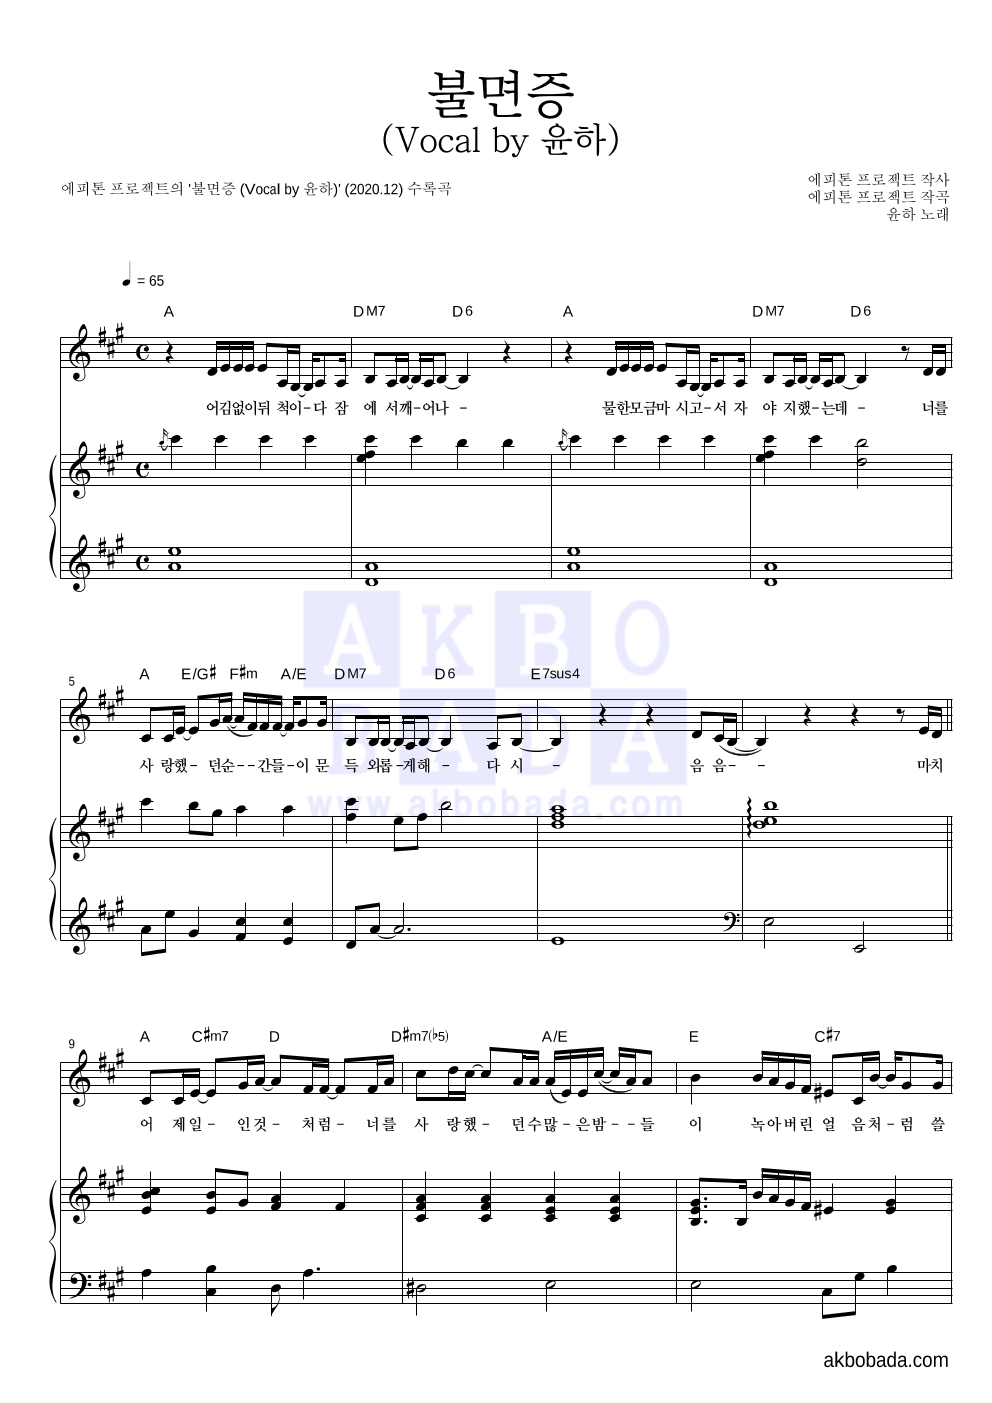 에피톤 프로젝트 - 불면증 (Vocal by 윤하) 피아노 3단 악보 